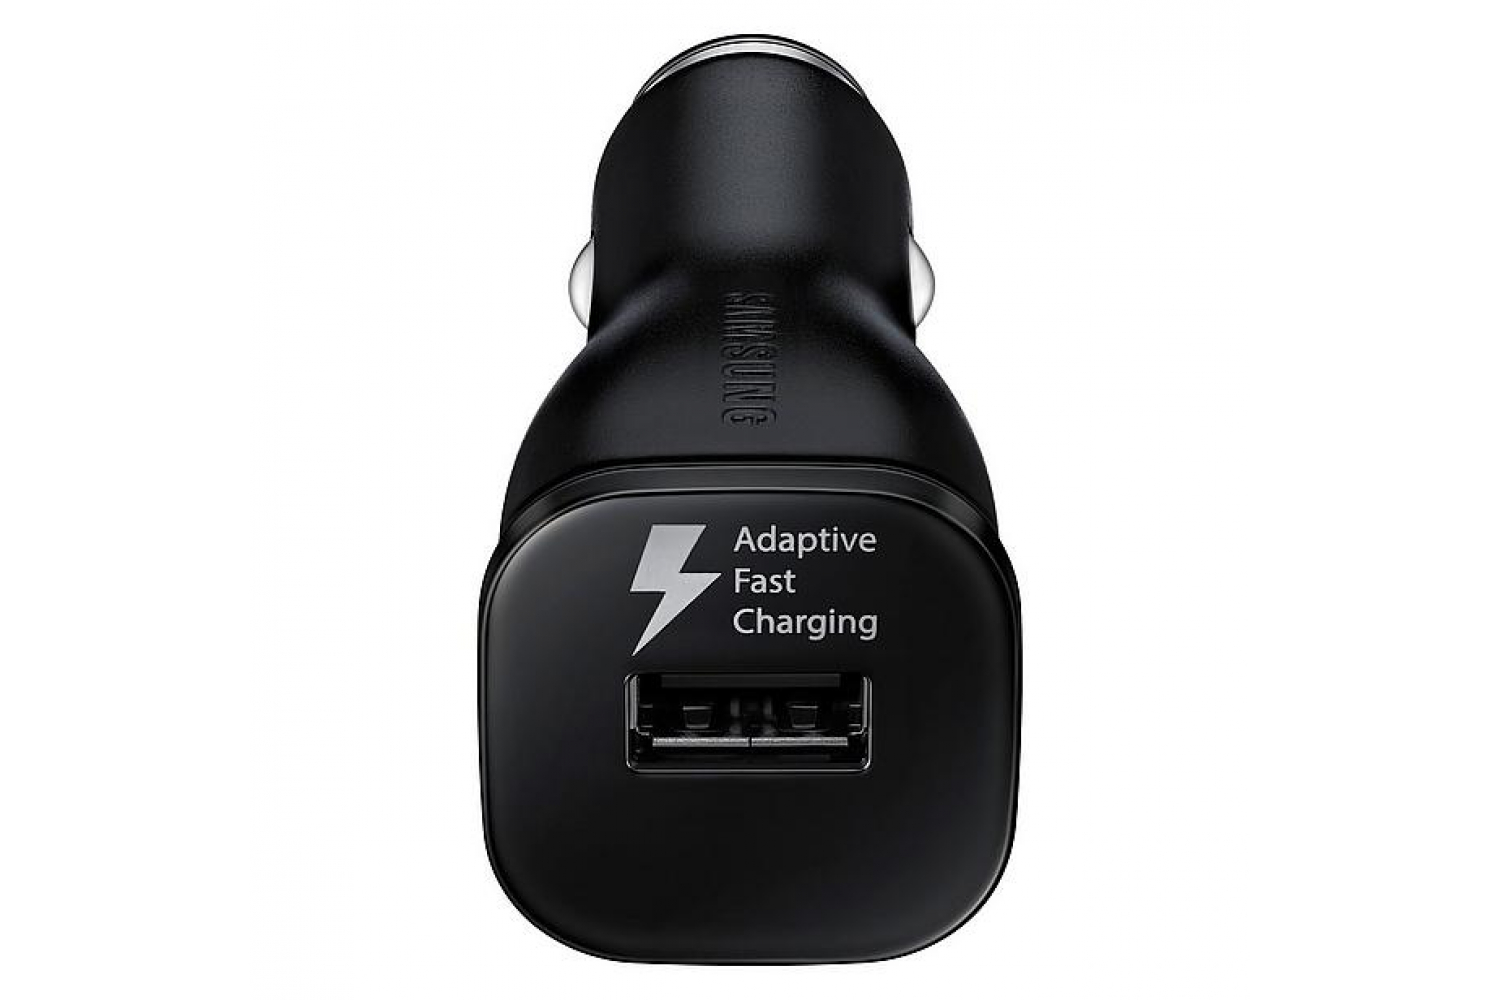 Avondeten verkoper arm Samsung autolader fast charger inclusief USB kabel zwart charge snellader |  tablettotaal.nl